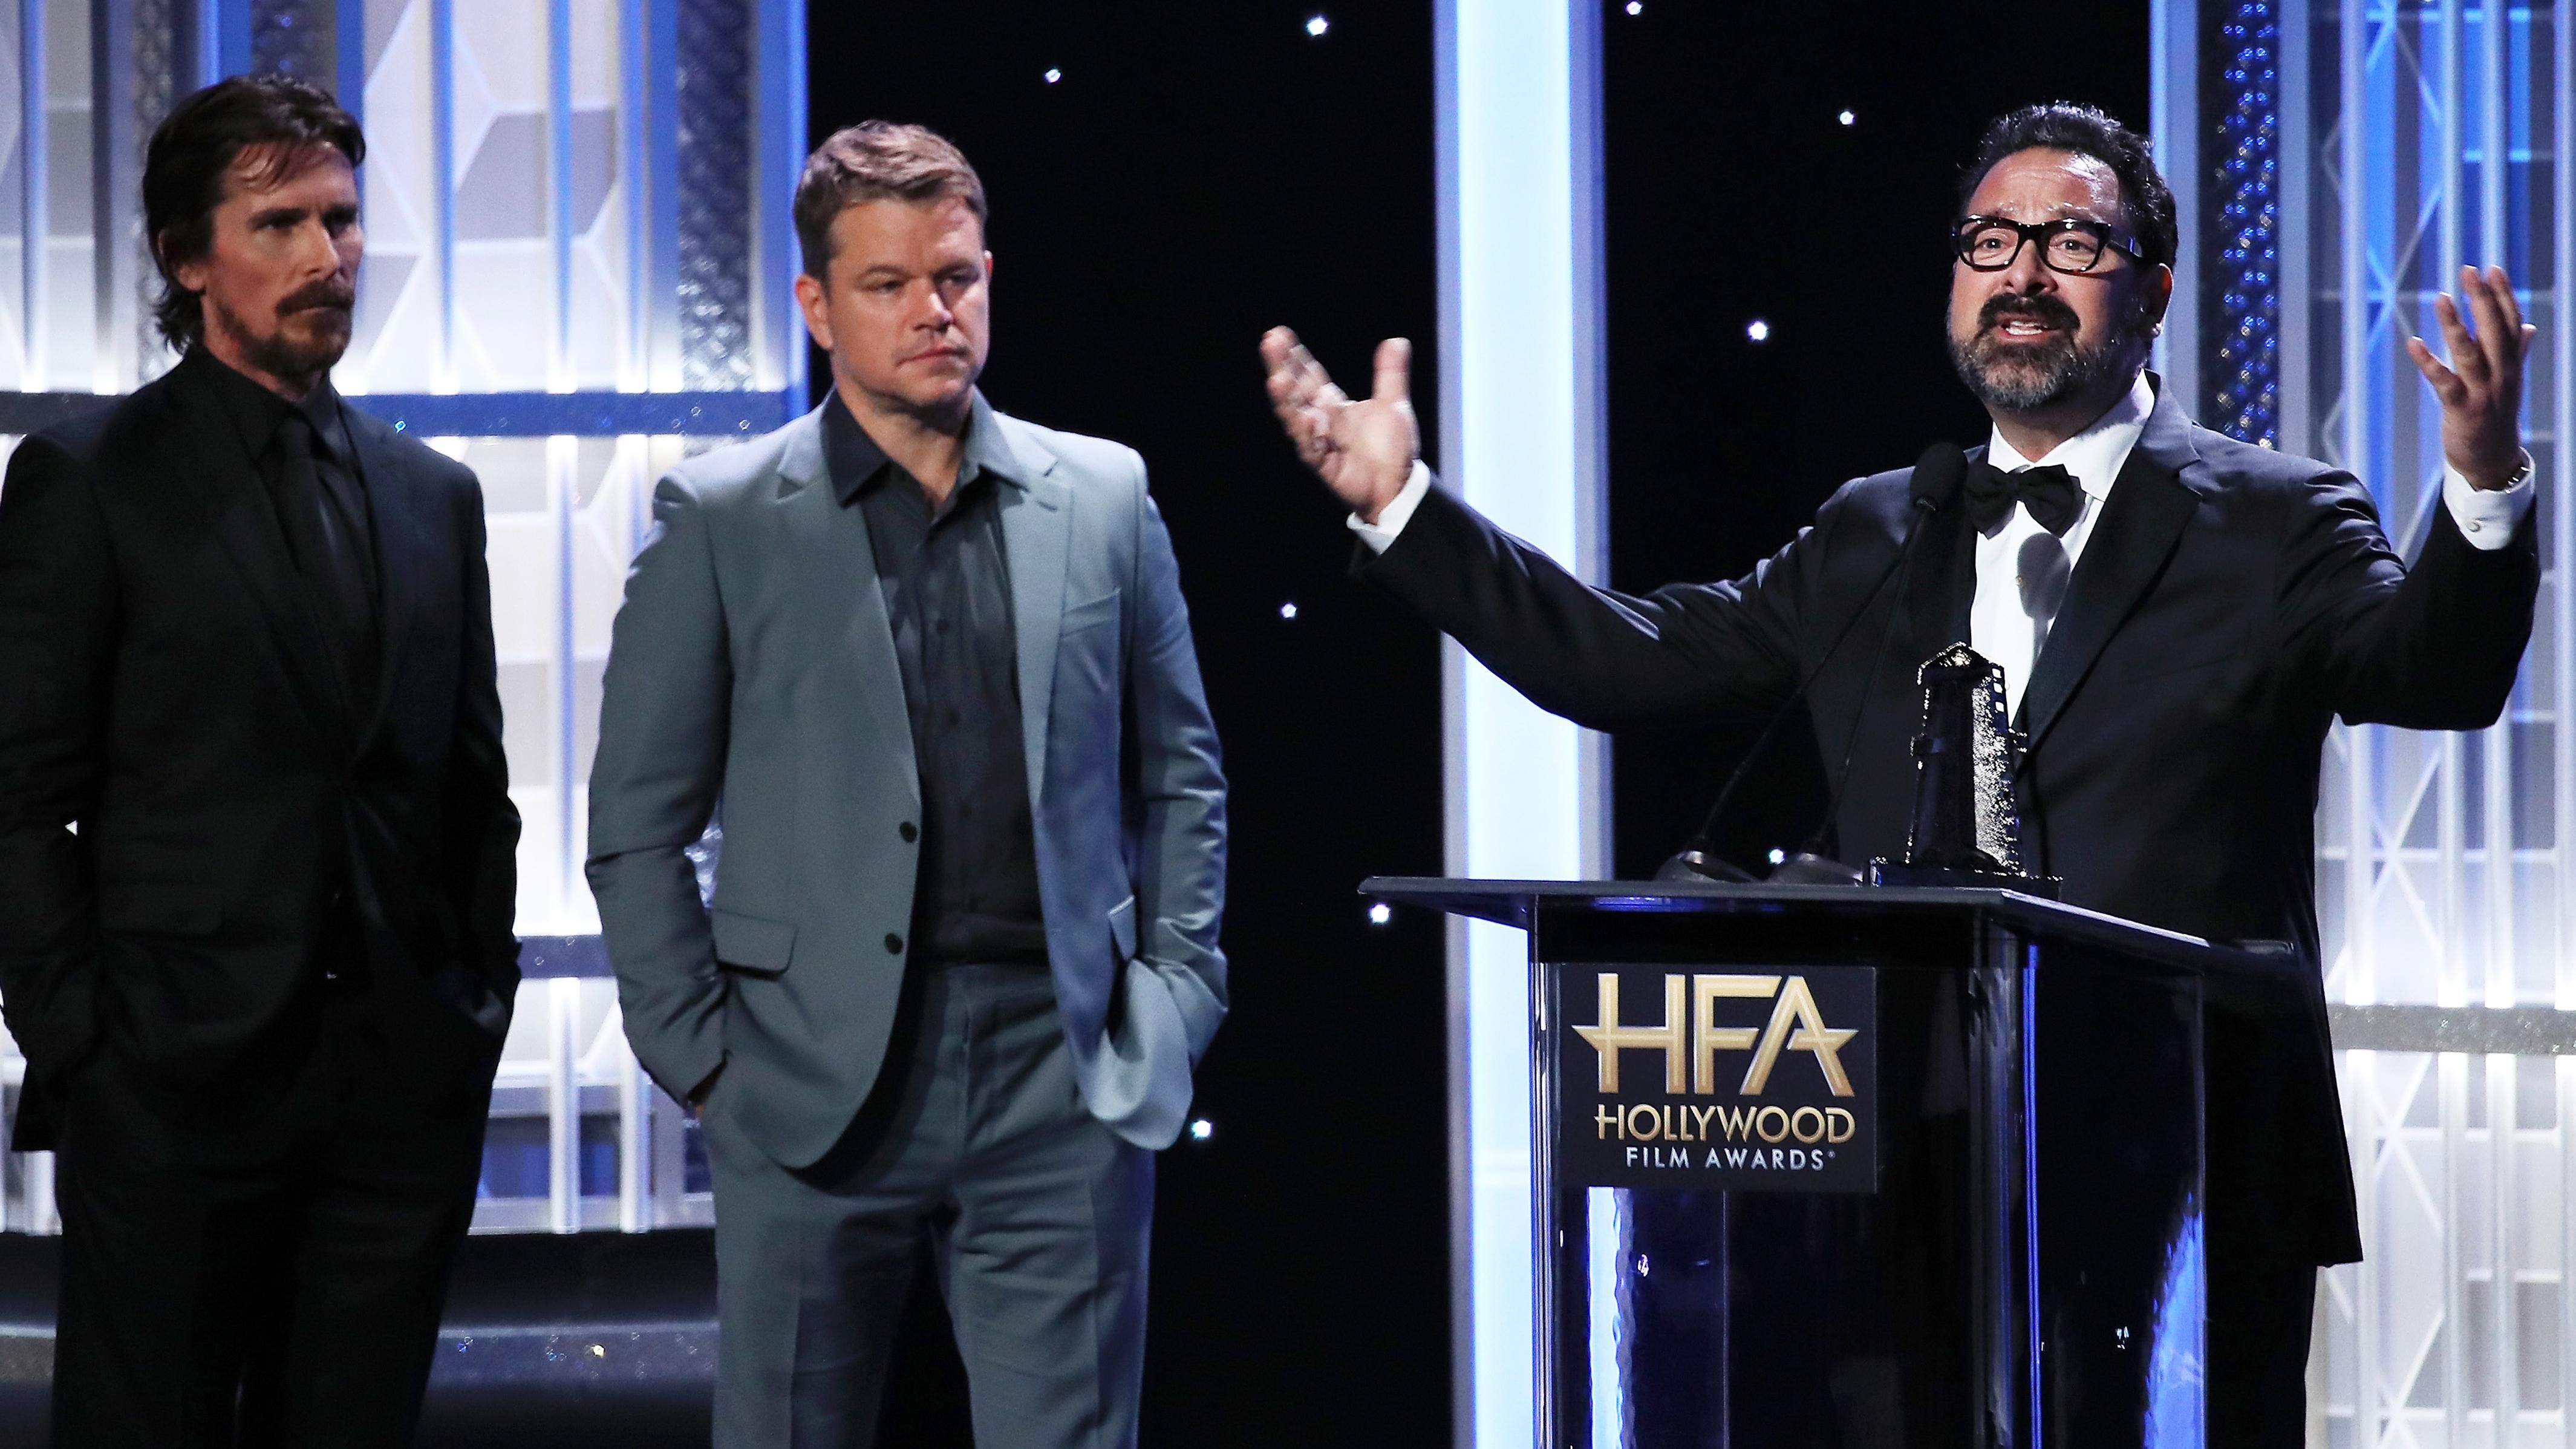 Hollywood Film Awards 2019: список победителей престижной голливудской кинопремии